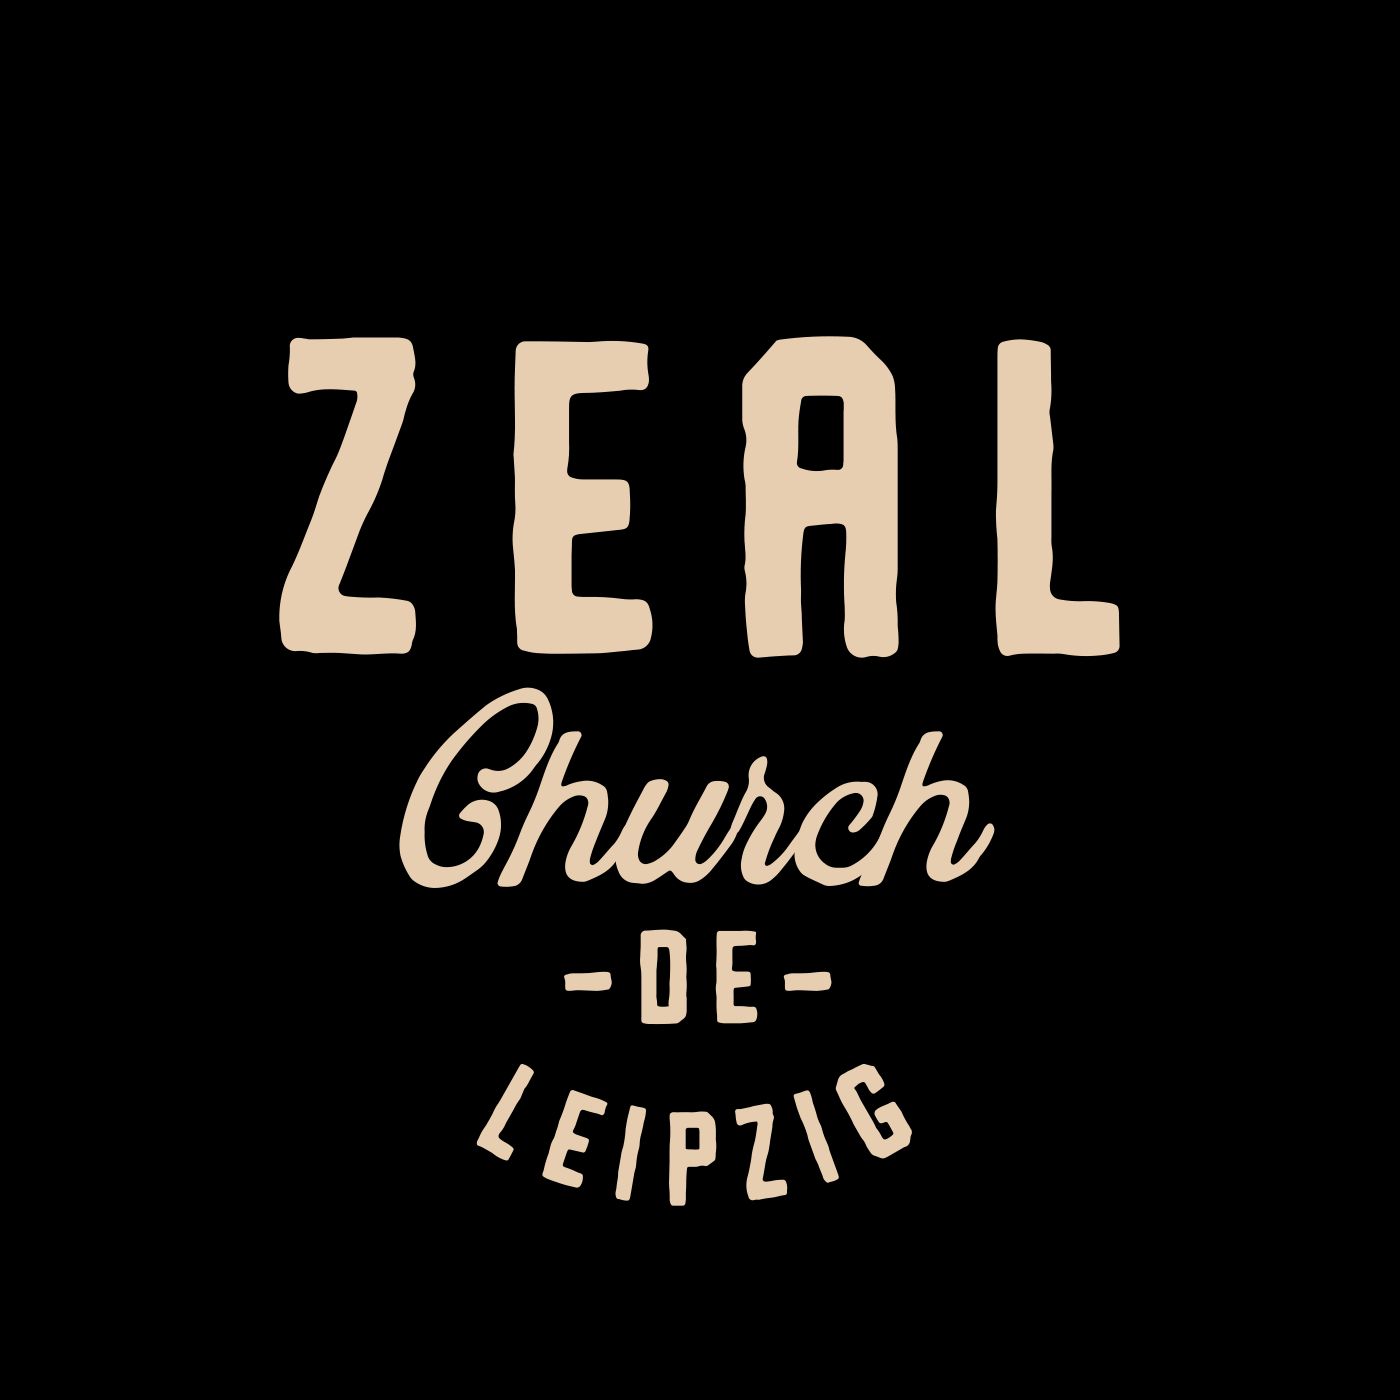 Zeal Church Leipzig